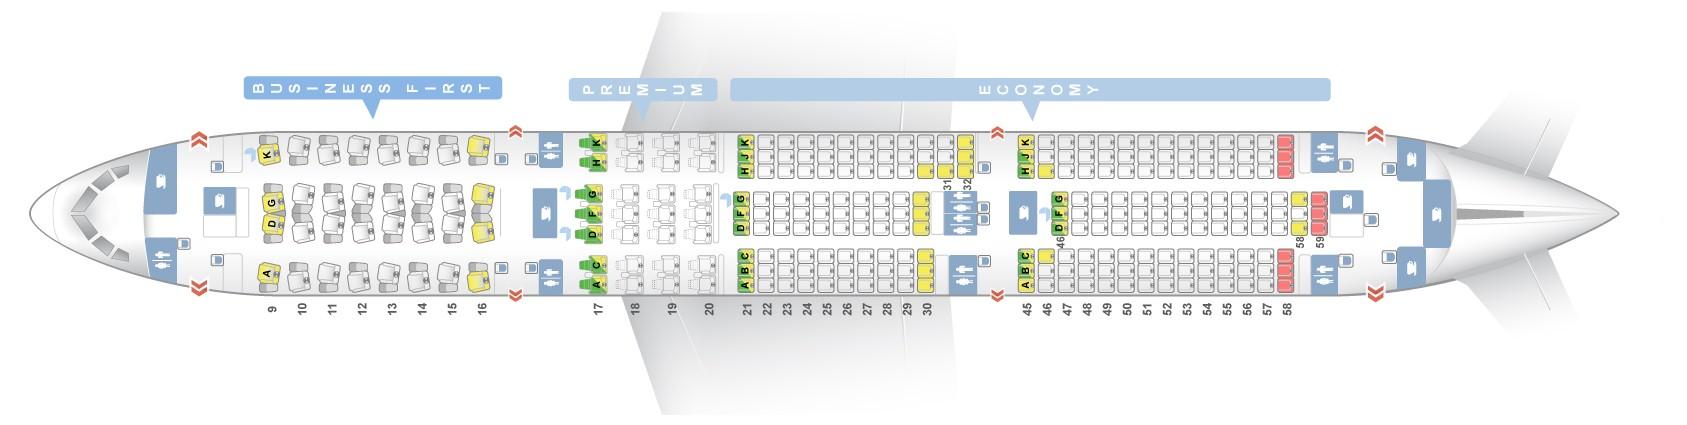 Boeing 747 Seating Chart El Al